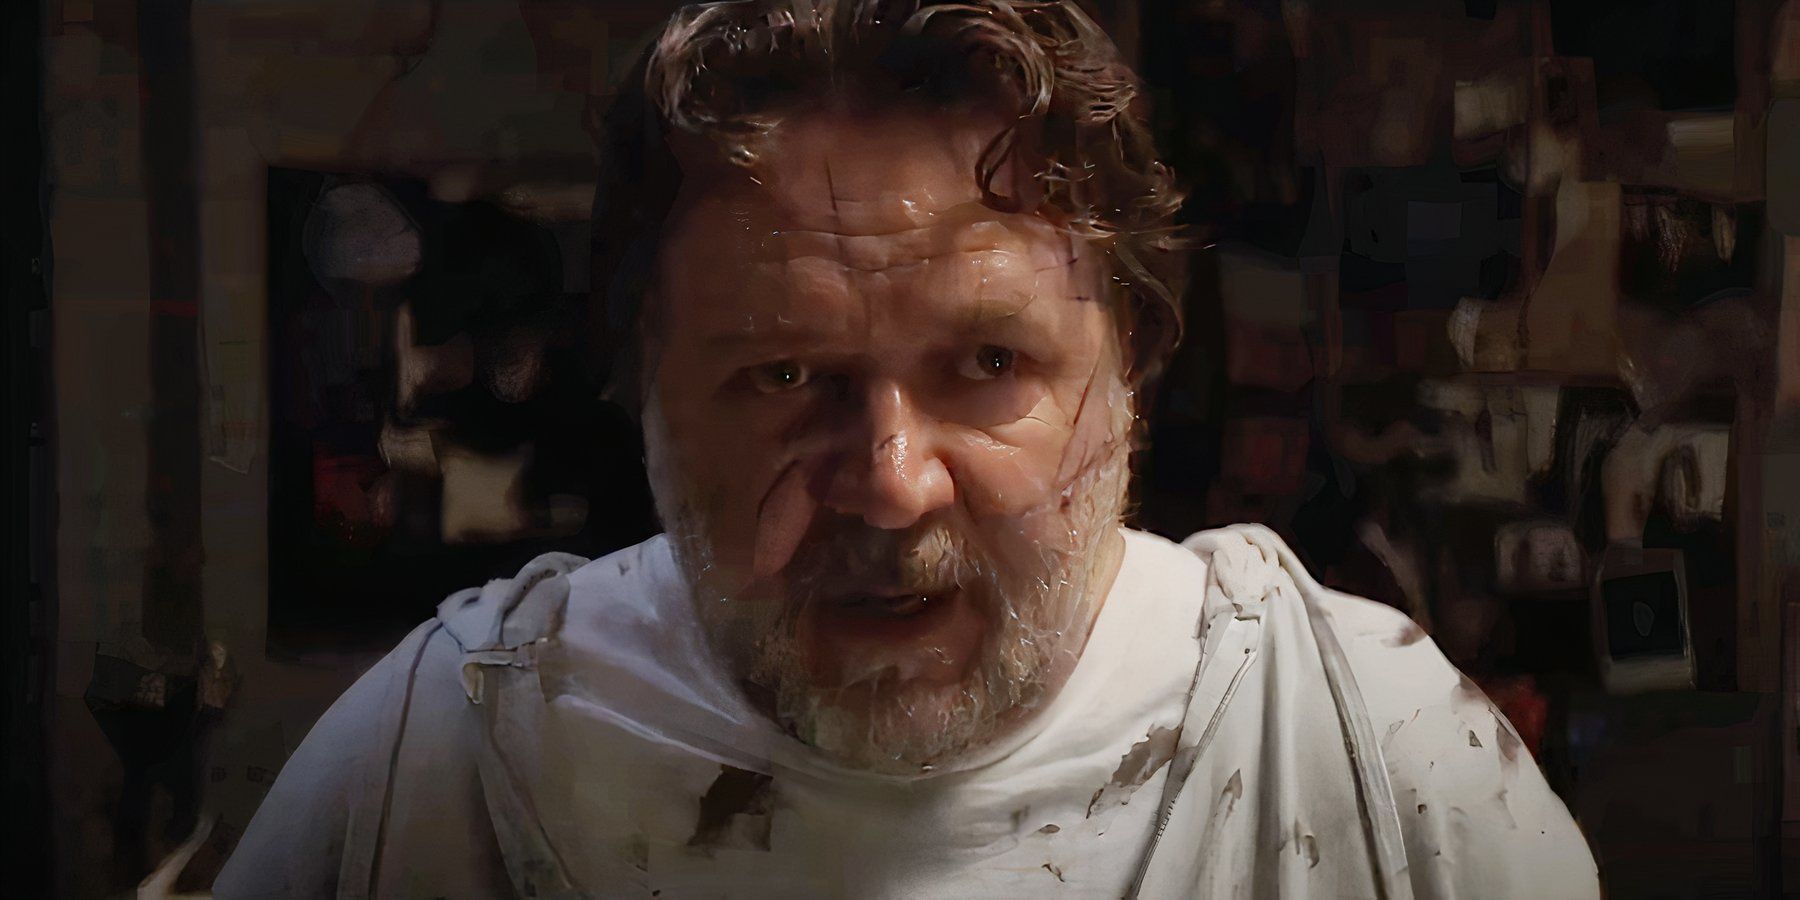 La otra película de terror de Russell Crowe, El exorcismo, ya tiene fecha de estreno en VOD